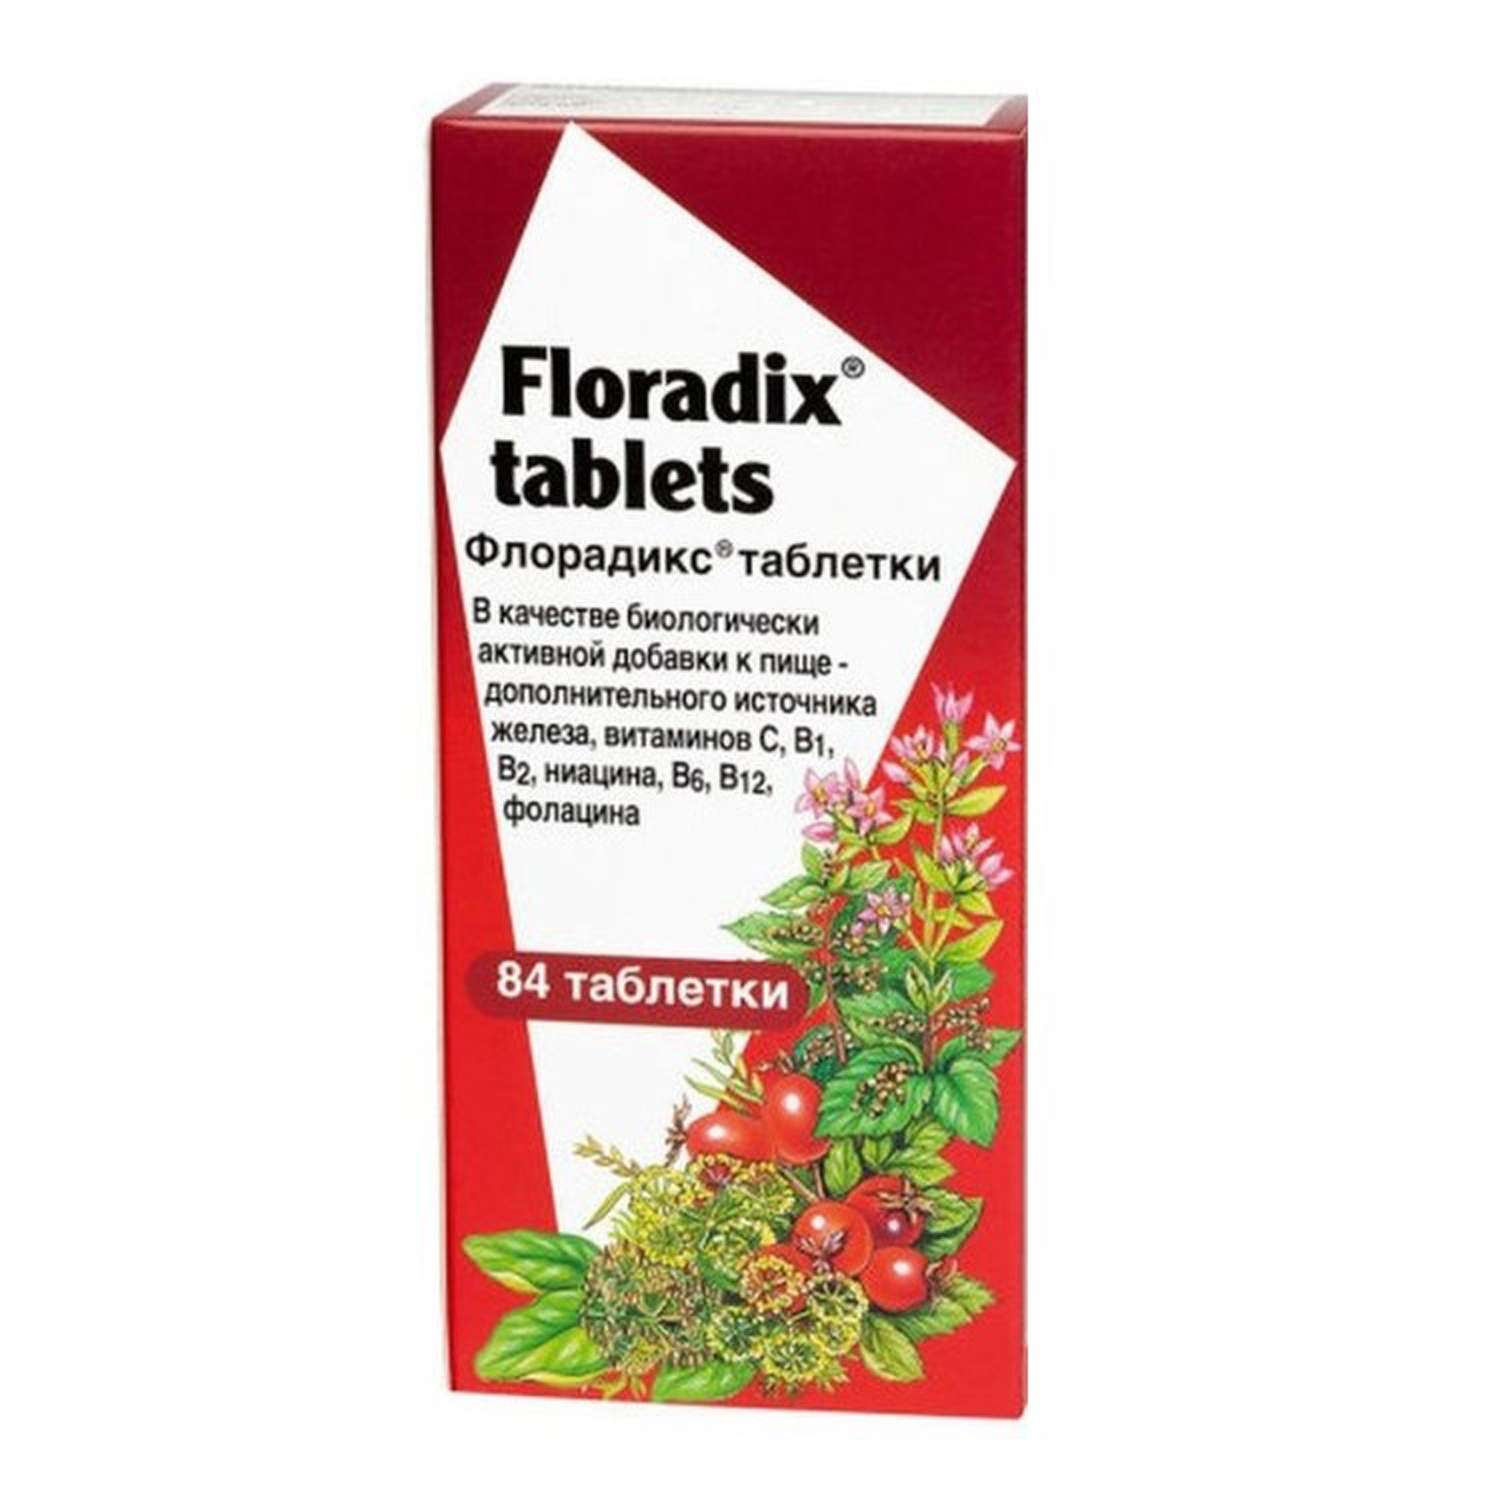 Биологически активная добавка Salus к пище флорадикс 84 таблетки - фото 1